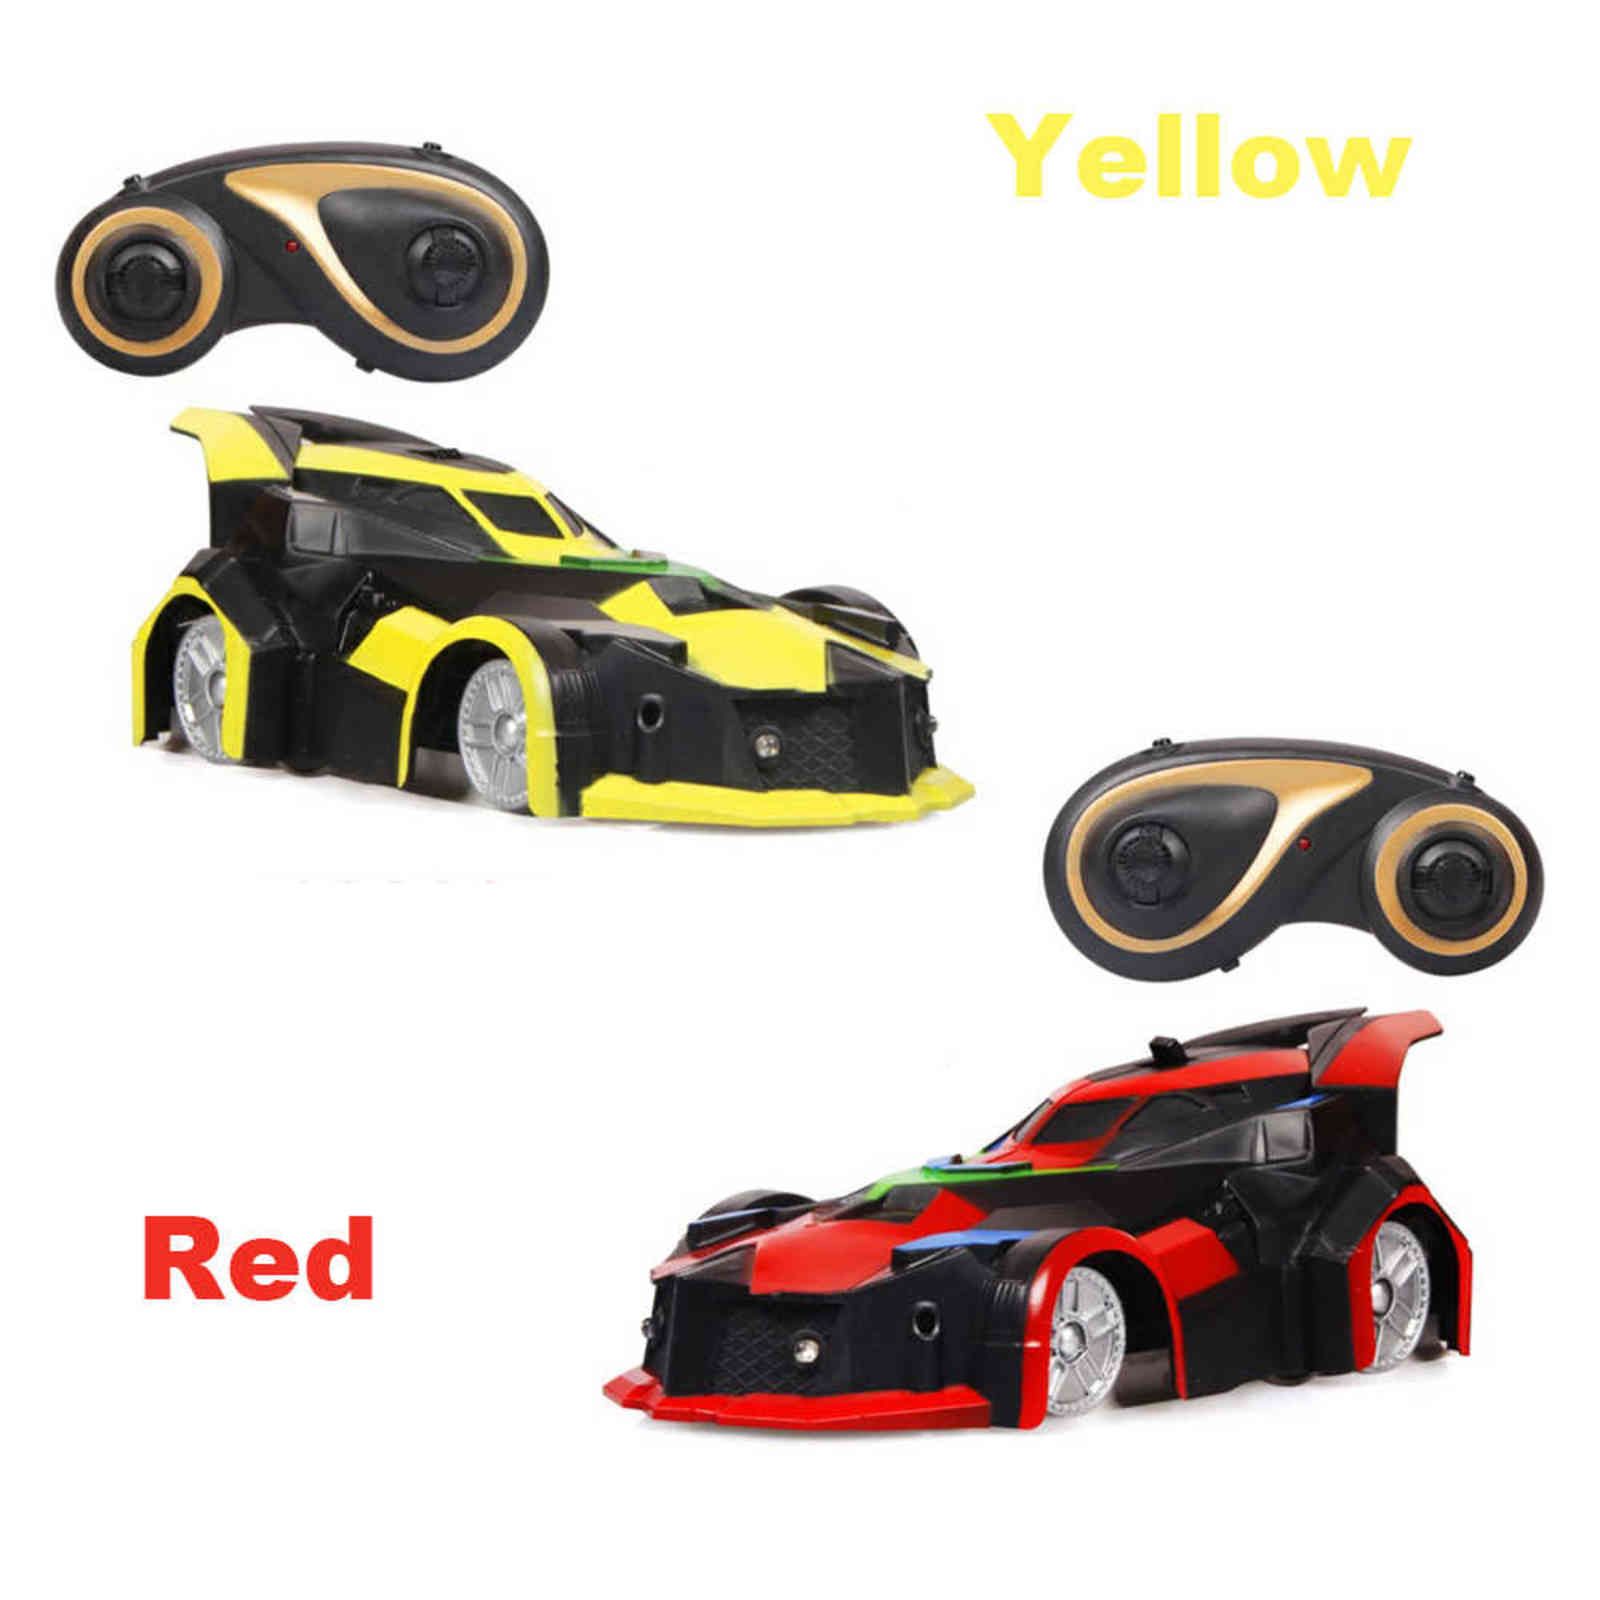 Rouge et jaune